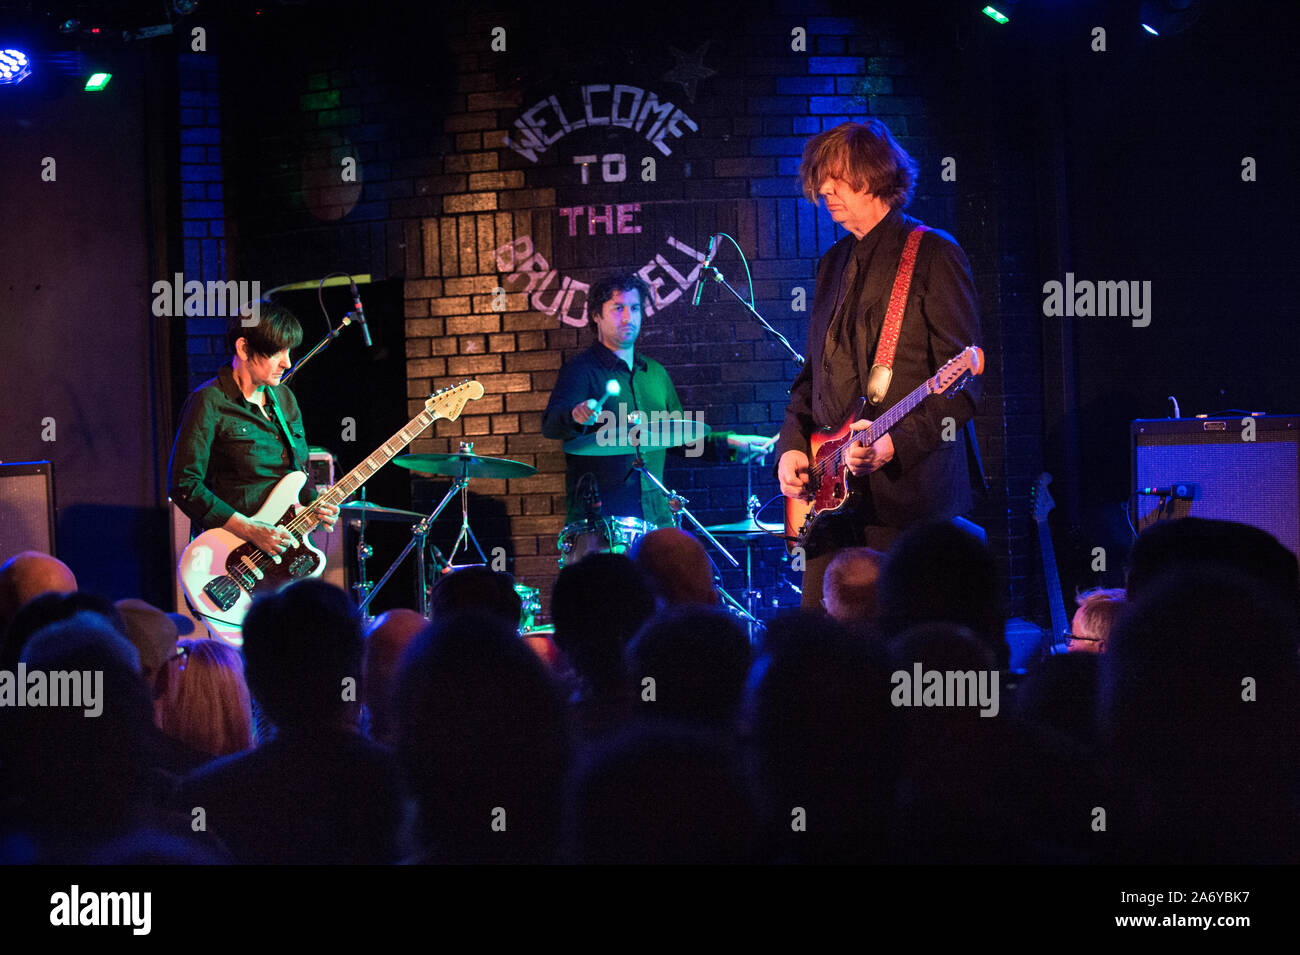 Die Thurston Moore Gruppe im Konzert an Brudenell Social Club, Leeds, UK, 16. Oktober 2019. Thurston Moore mit Gitarre auf der rechten Seite. Debbie Googe am Bass auf der linken Seite. Stockfoto